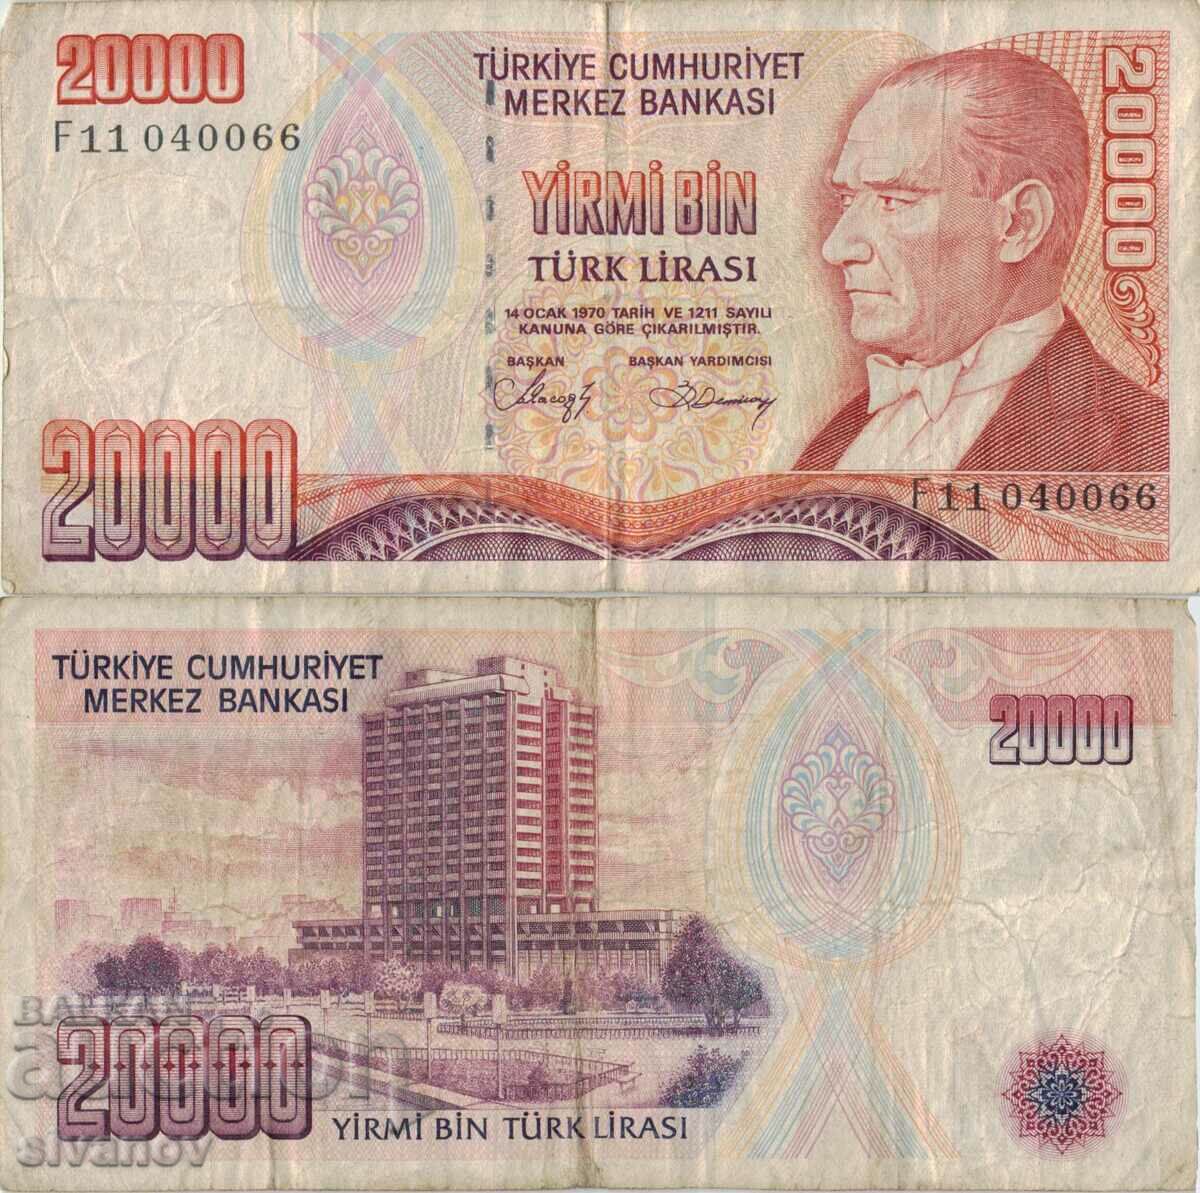 Turkey 20,000 lira 1970 (1988) year banknote #5187